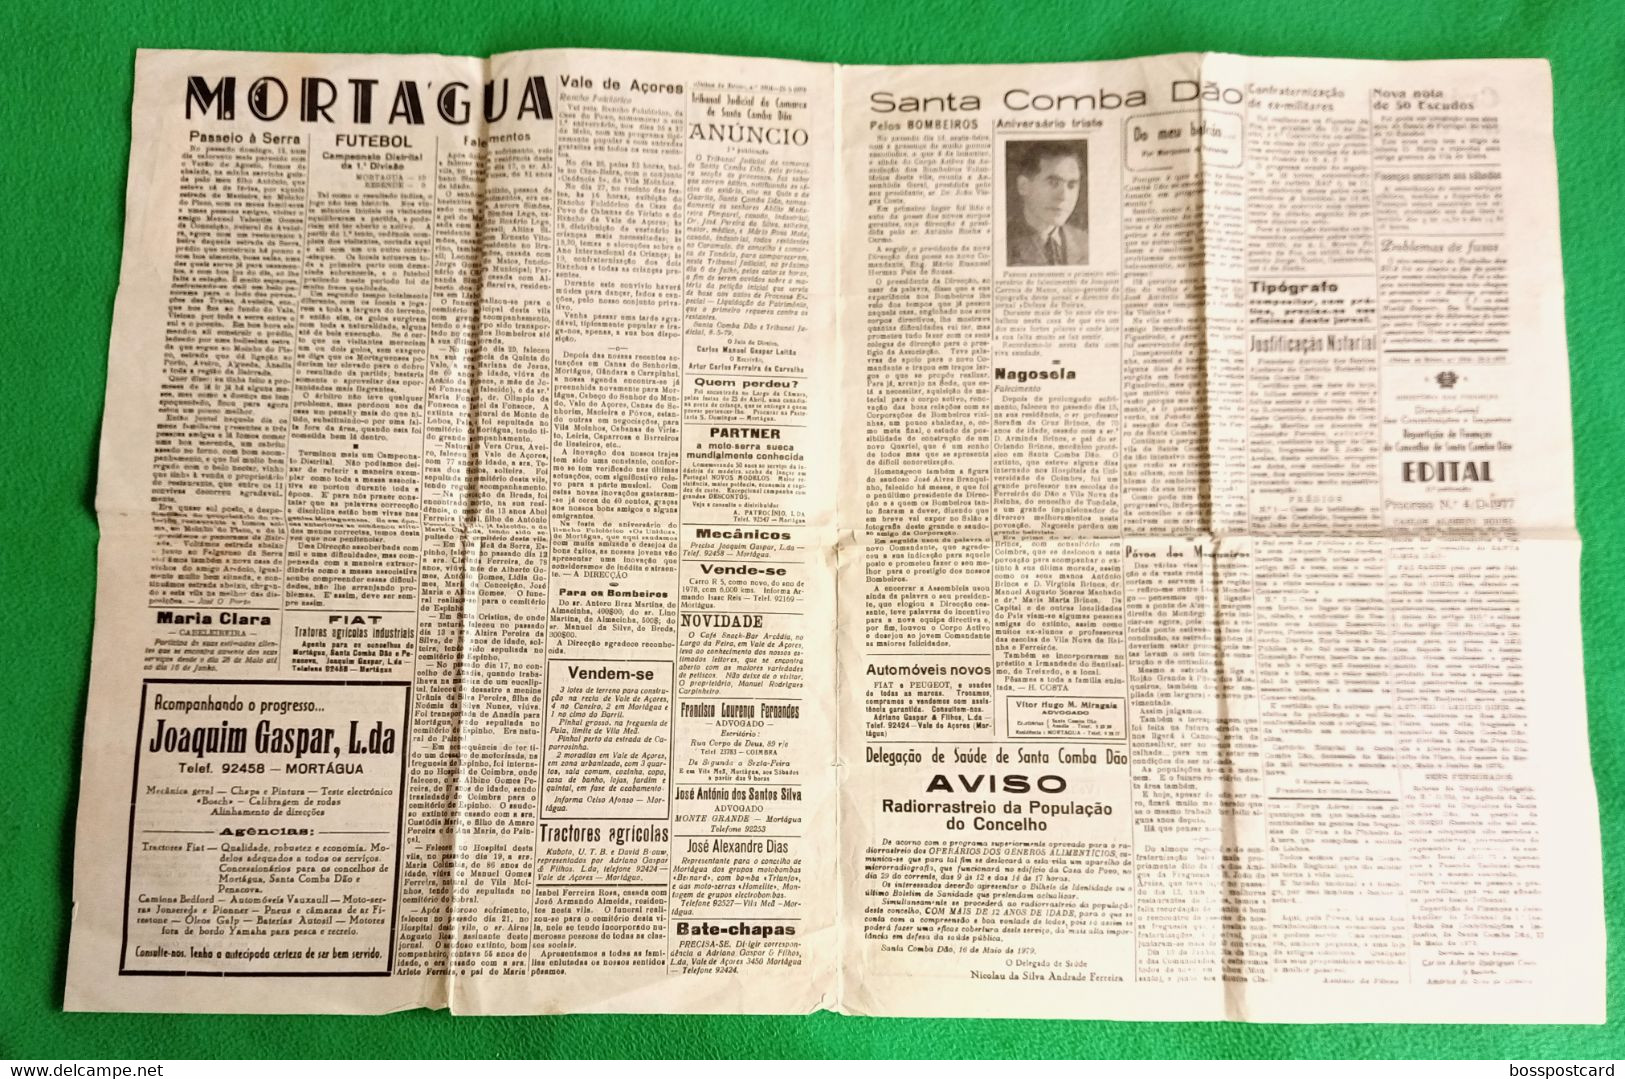 Santa Comba Dão - Jornal "Defesa Da Beira" Nº 1916, 25 De Maio De 1979 - Imprensa. Tábua. Mortágua. Viseu. Portugal. - Informations Générales